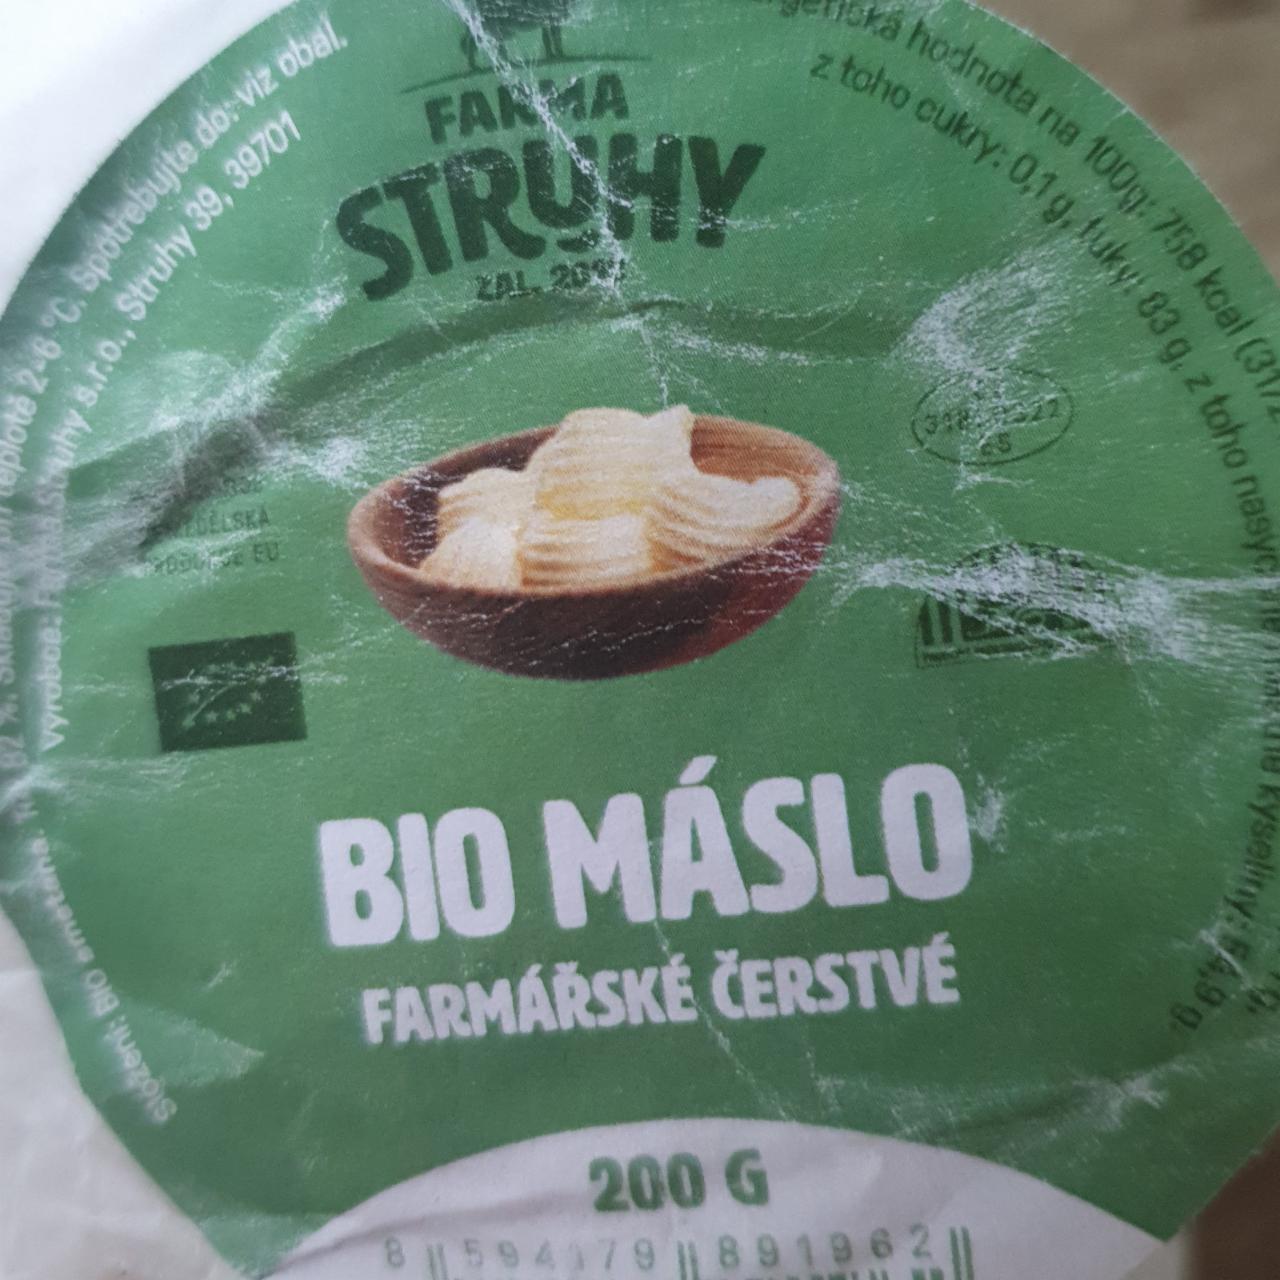 Fotografie - Bio máslo farmářské čerstvé Farma Struhy